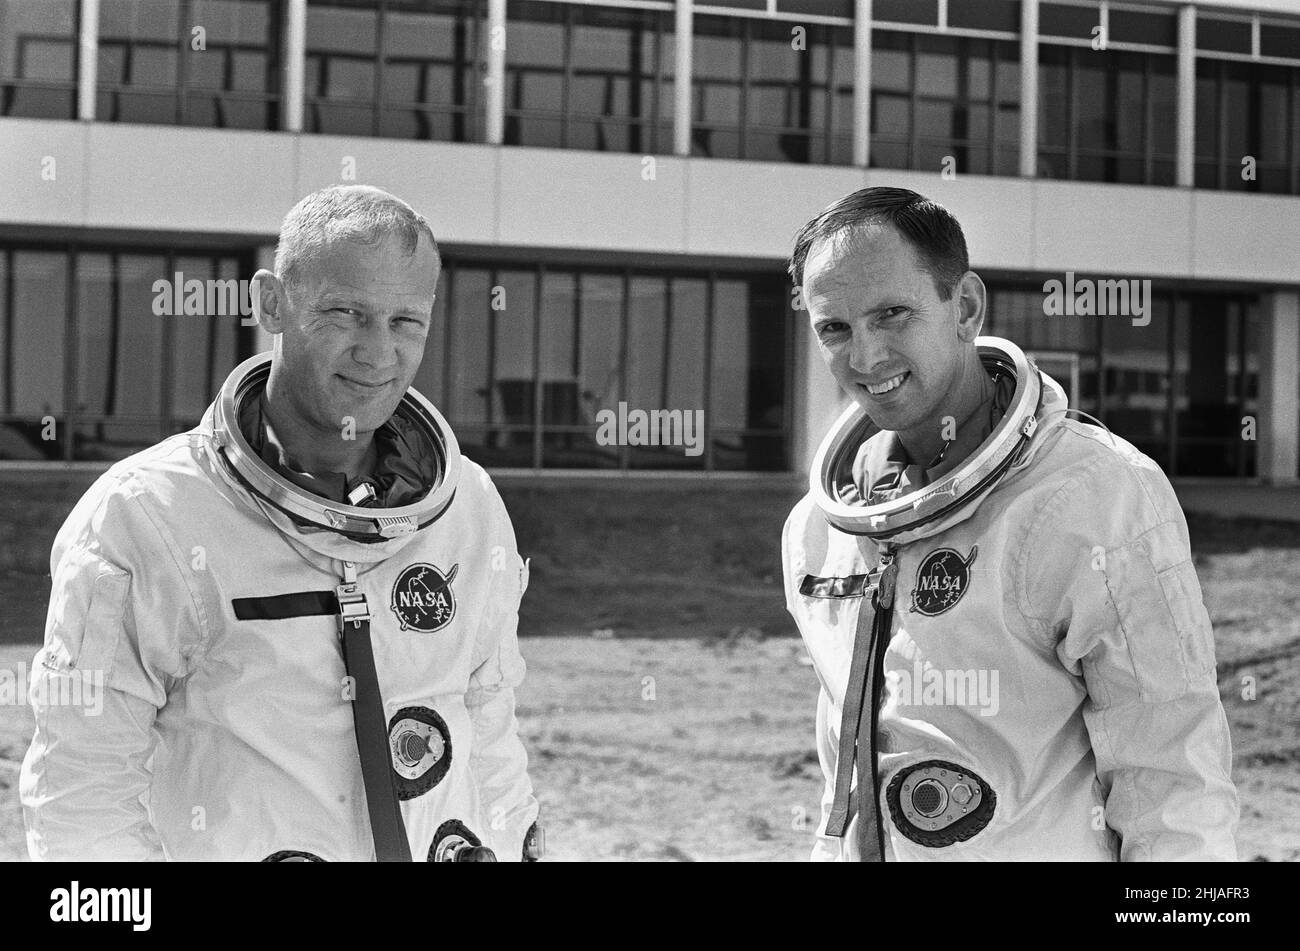 Les astronautes Edwin Eugene Buzz Aldrin (à gauche) et Theodore Cordy Ted Freeman (à droite) vus ici au Johnson Space Center de Houston, Texas.Où ils ont été la formation pour le programme spatial Gemini.30th octobre 1964Astronaut Ted Freeman est malheureusement décédé dans un accident d'avion le lendemain de la prise de cette photo Banque D'Images